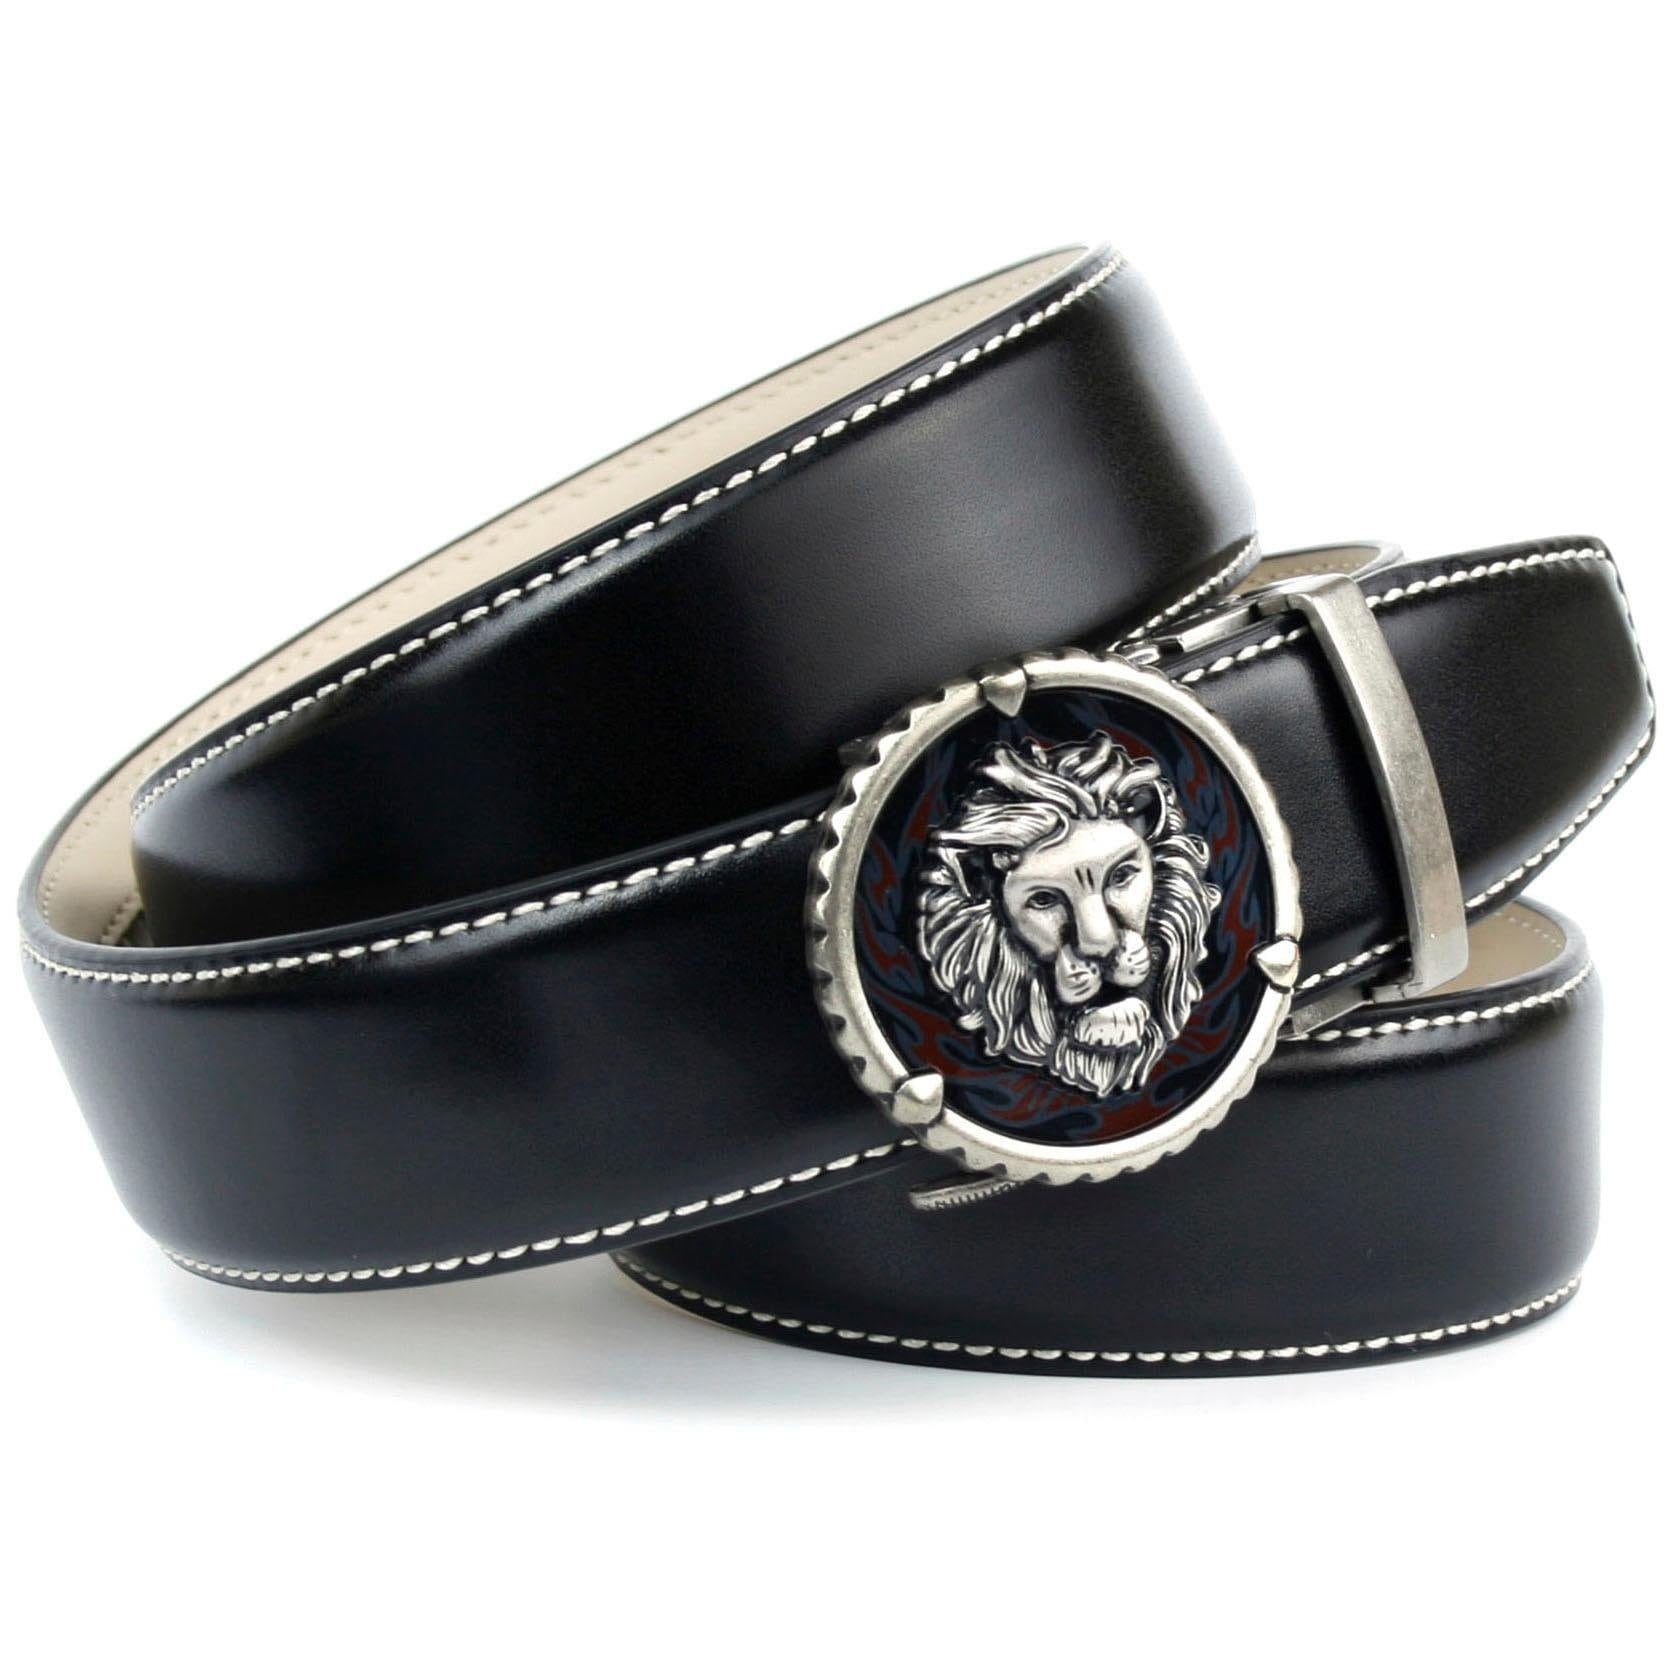 Anthoni Crown Ledergürtel, in schwarz mit Kontrast Stitching in weiß